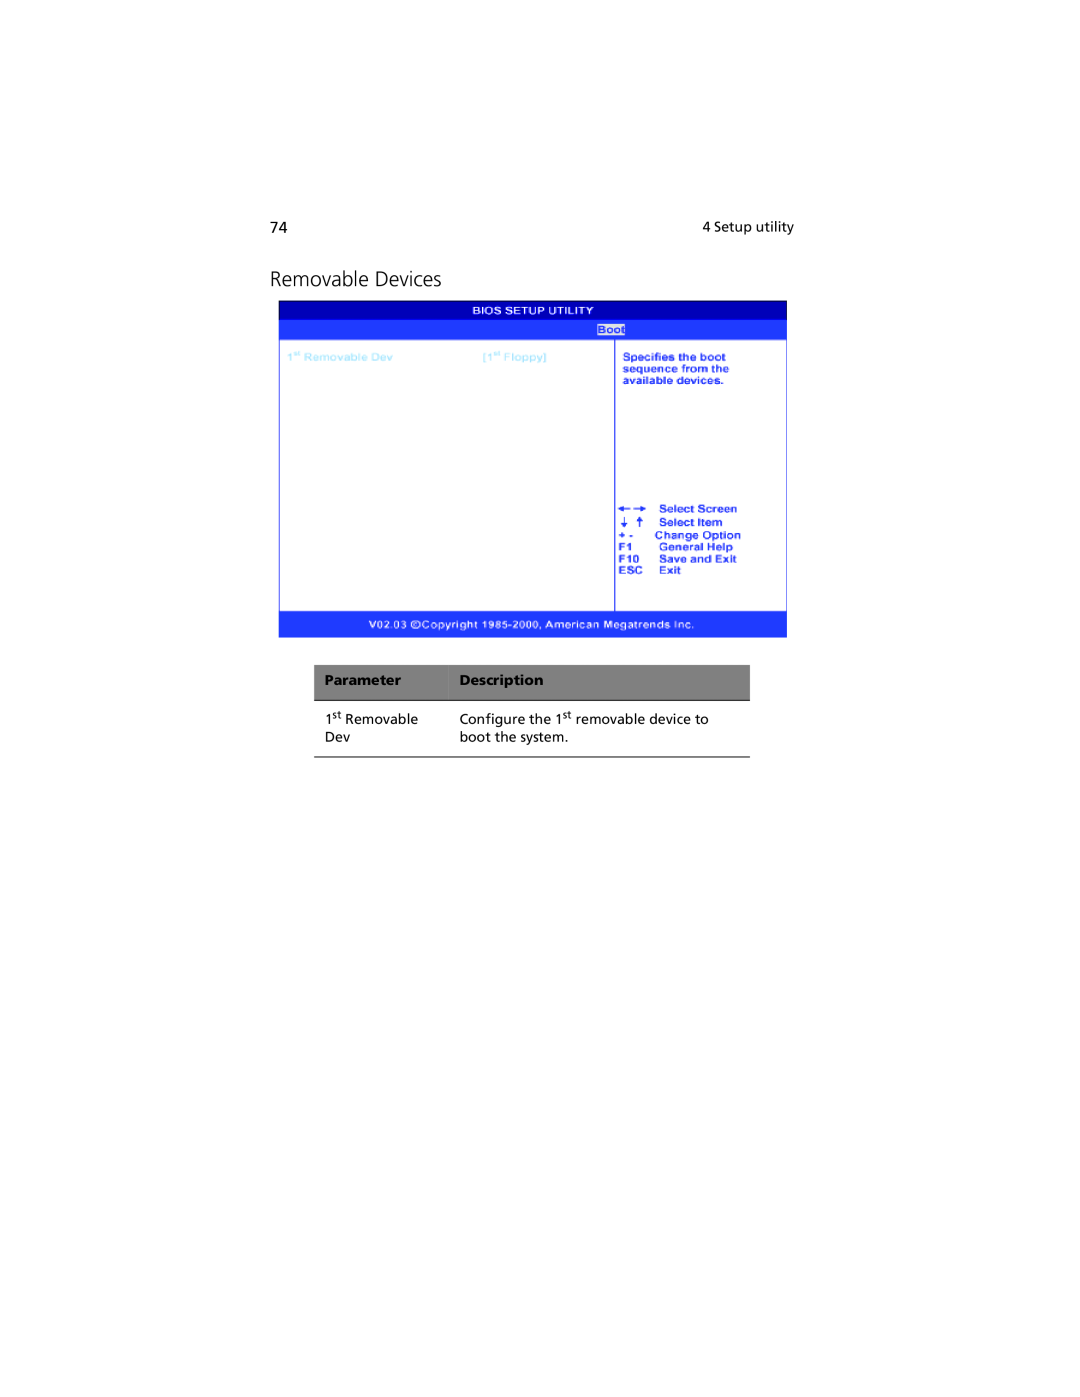 Acer G301 manual Removable Devices, Parameter, Description 